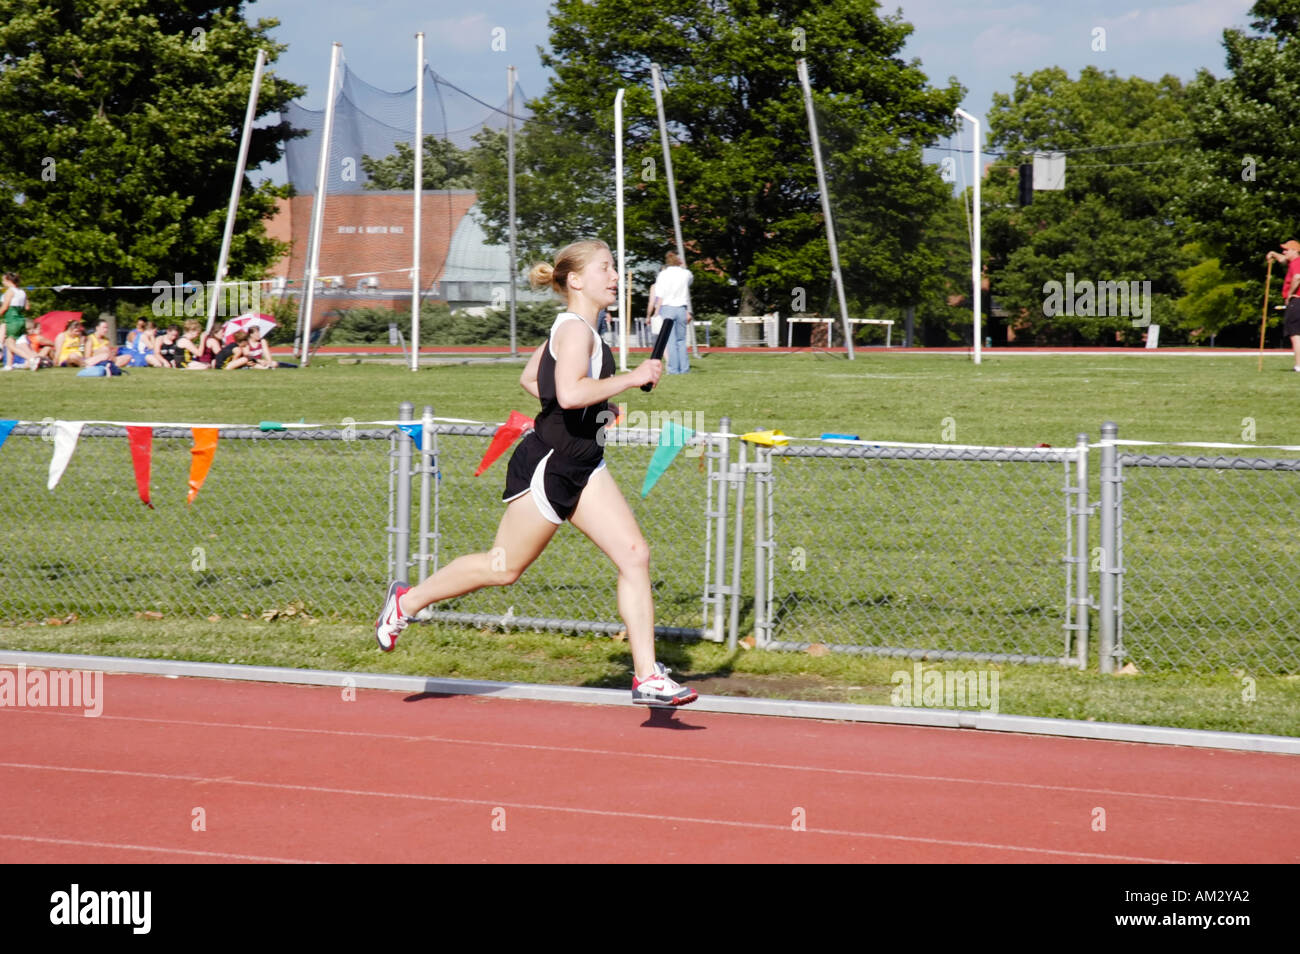 Teenager-Mädchen Staffellauf Läufer an einer High School Leichtathletik Bezirk treffen Stockfoto